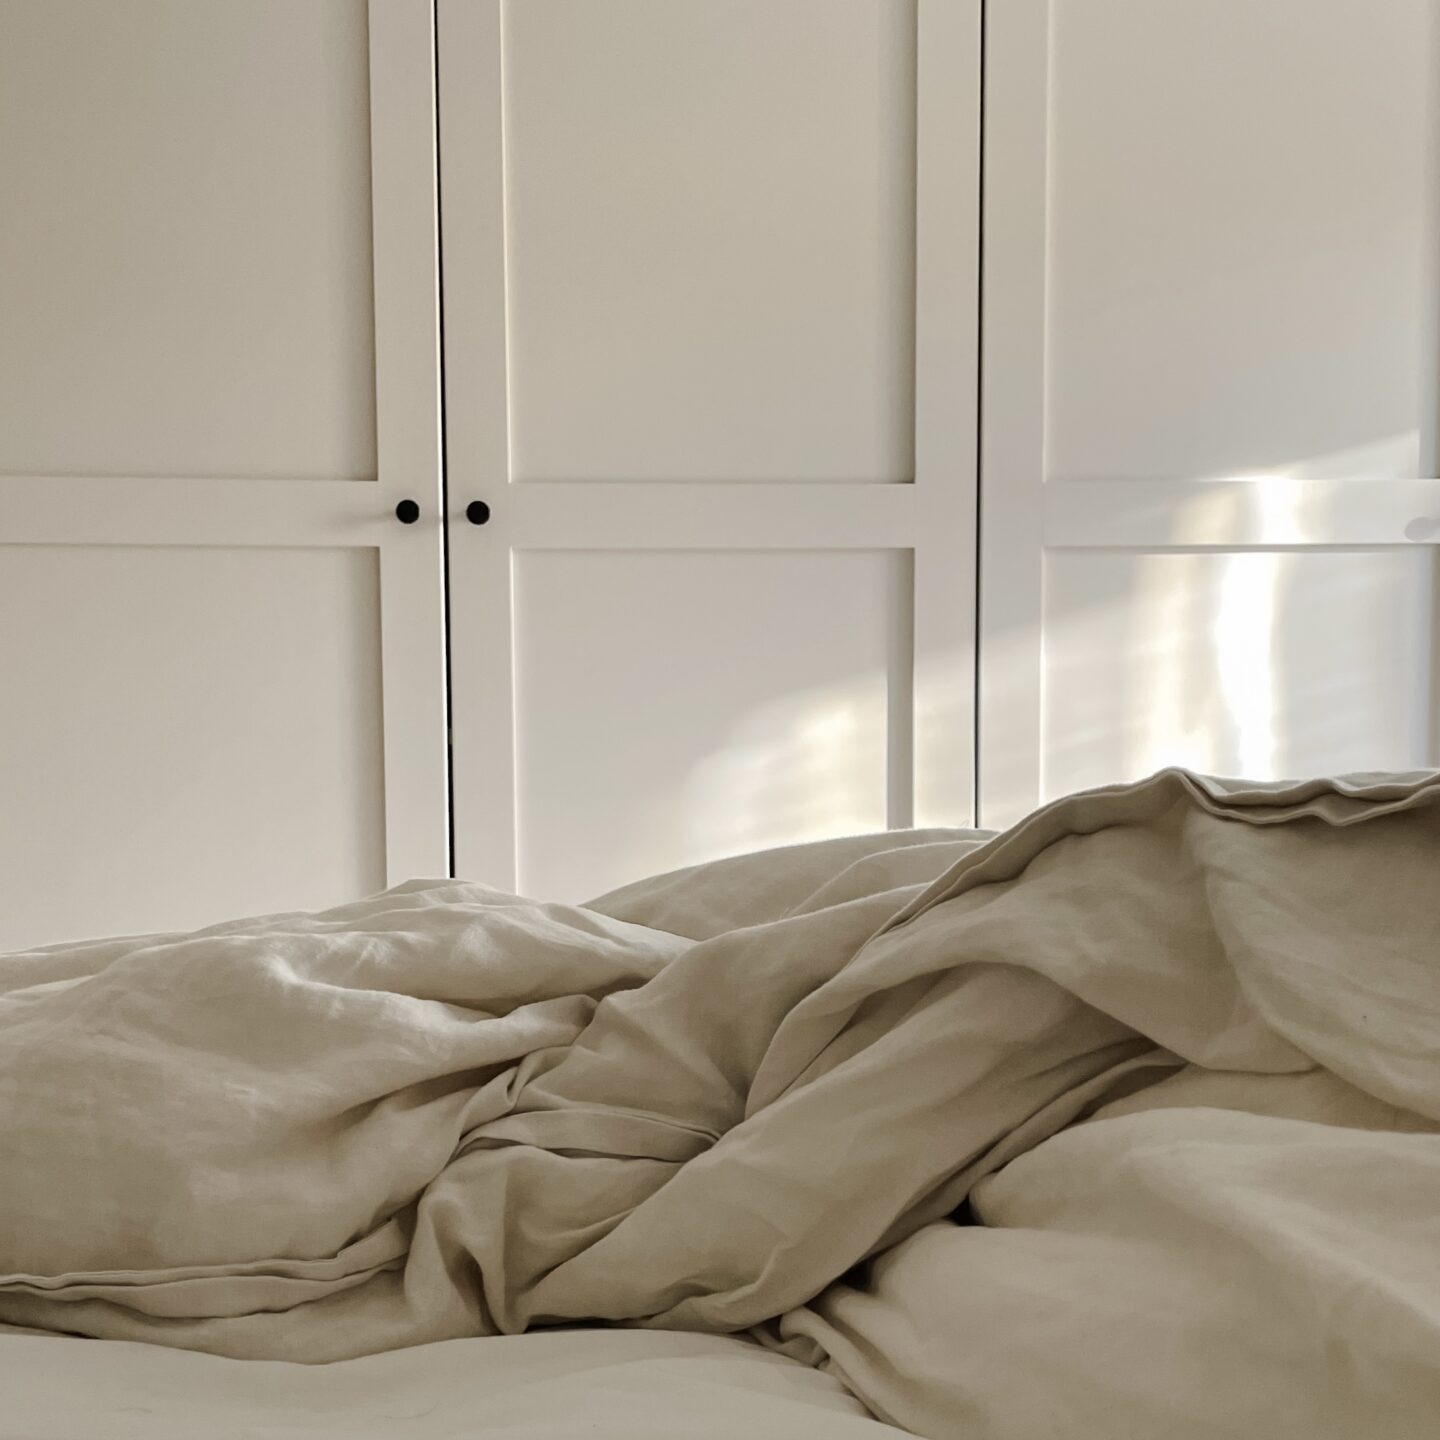 Linen bedding in neutral bedroom